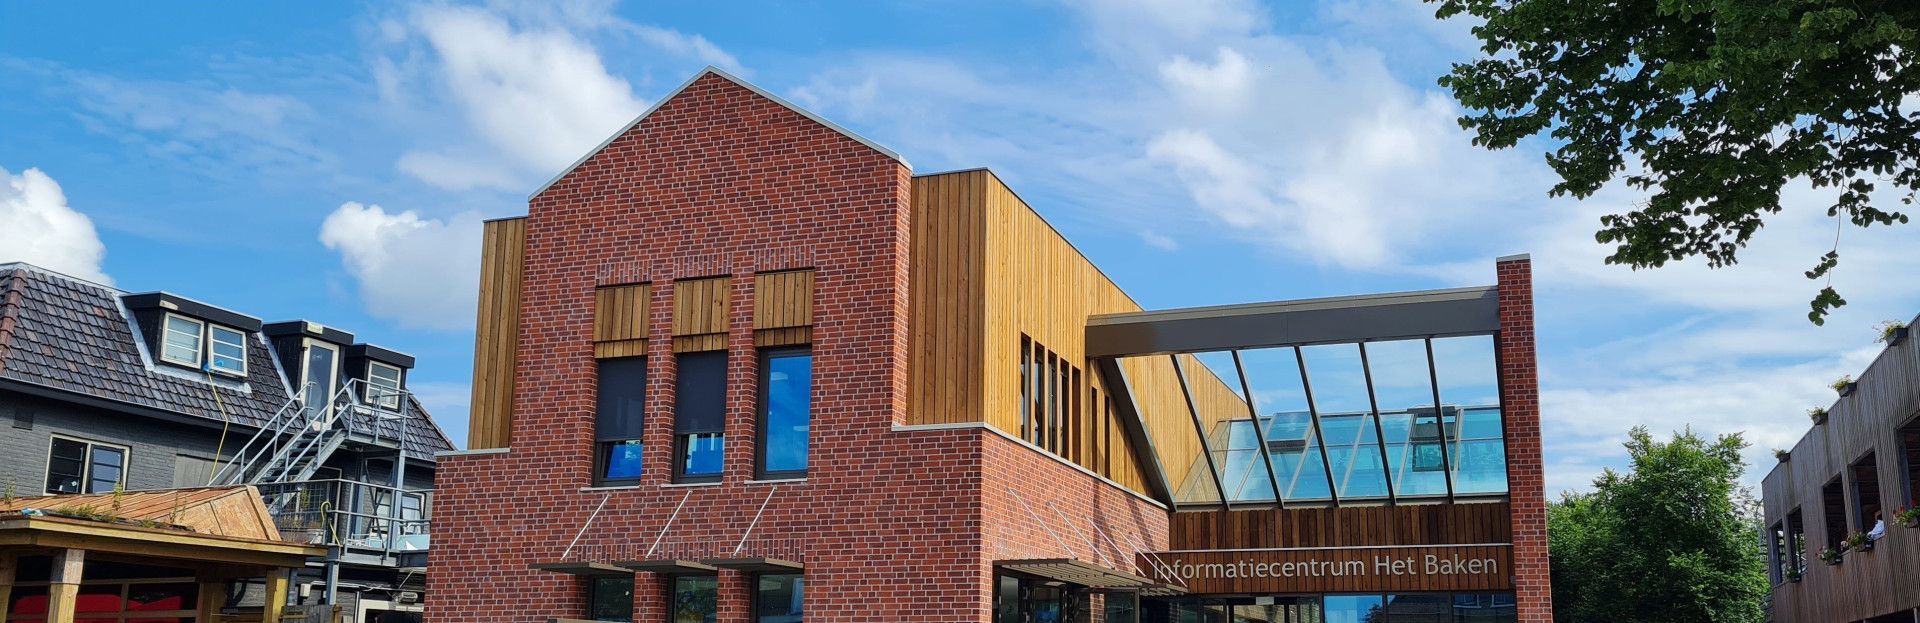 informatiecentrum het Baken op Schiermonnikoog